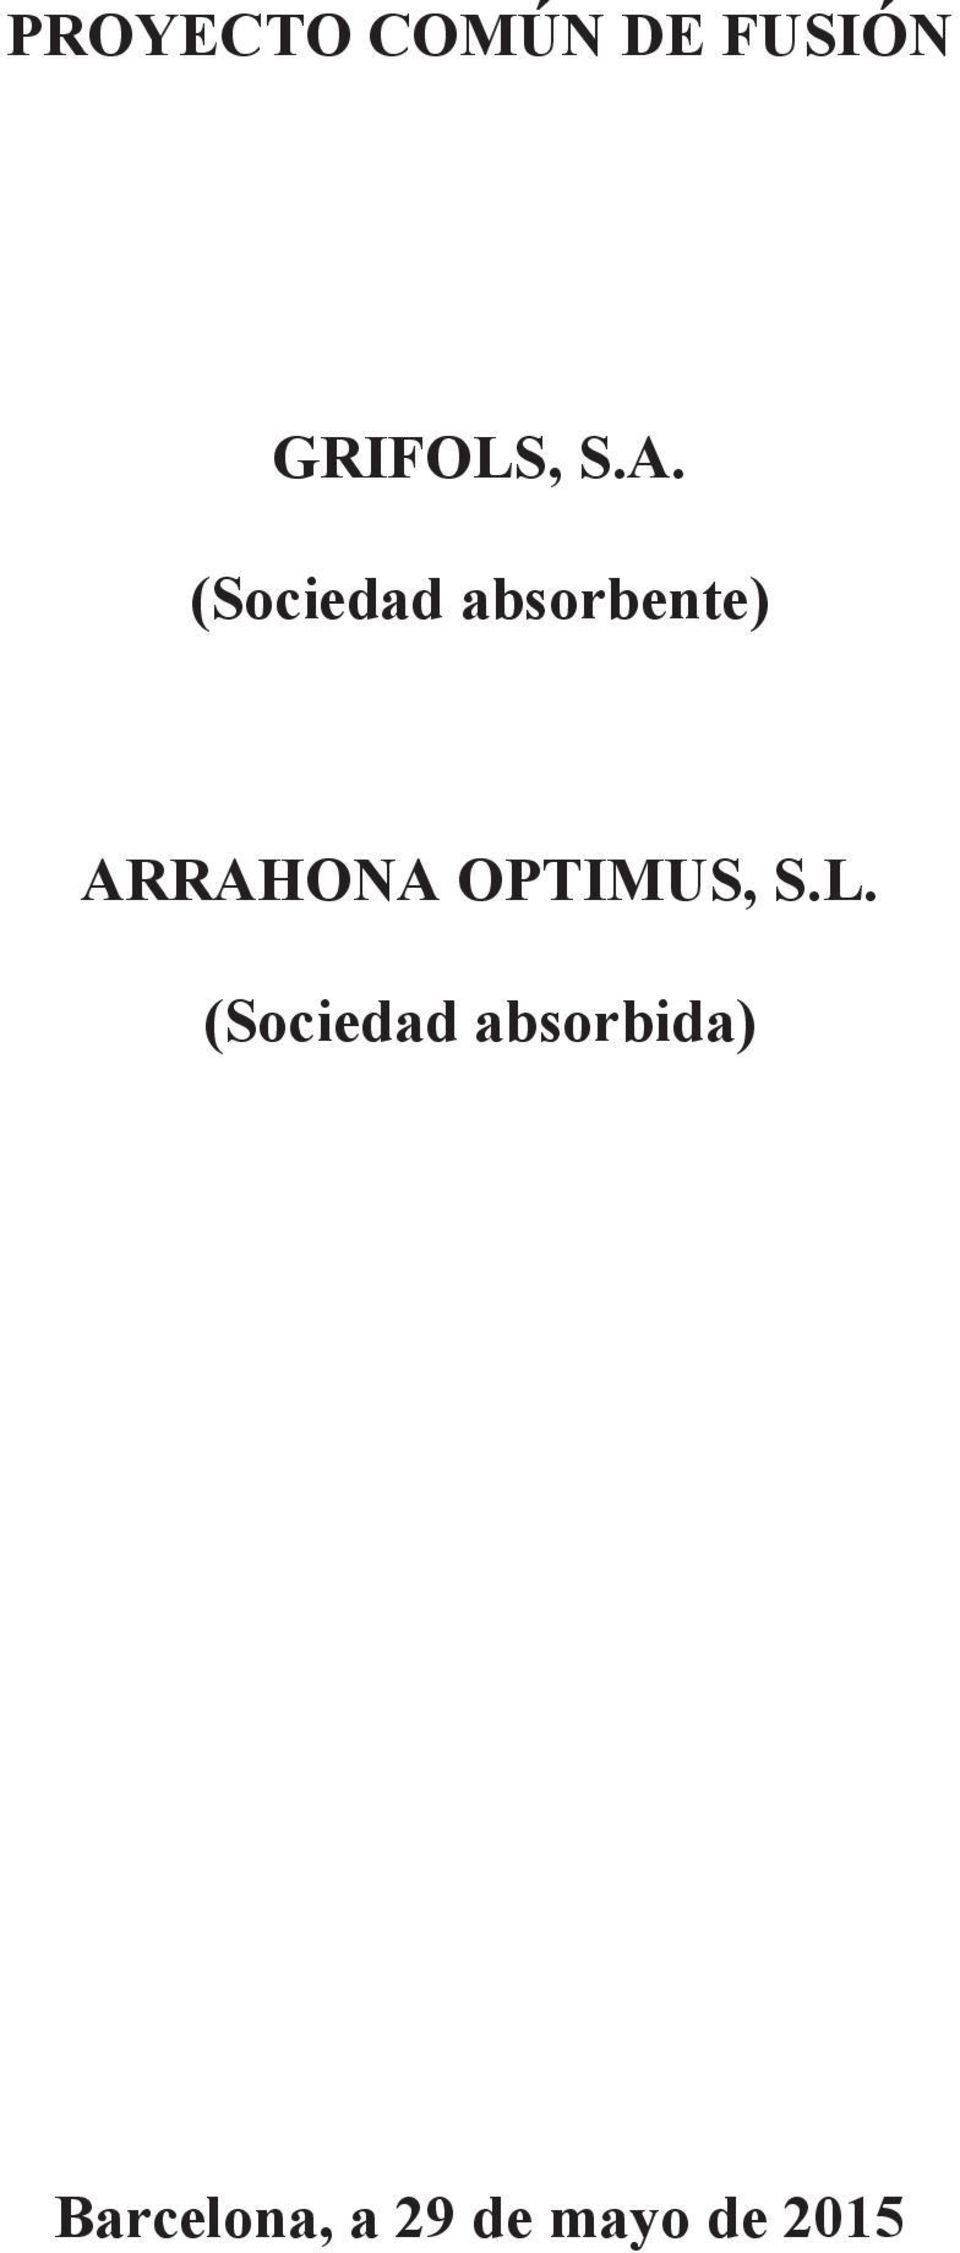 ARRAHONA OPTIMUS, S.L.